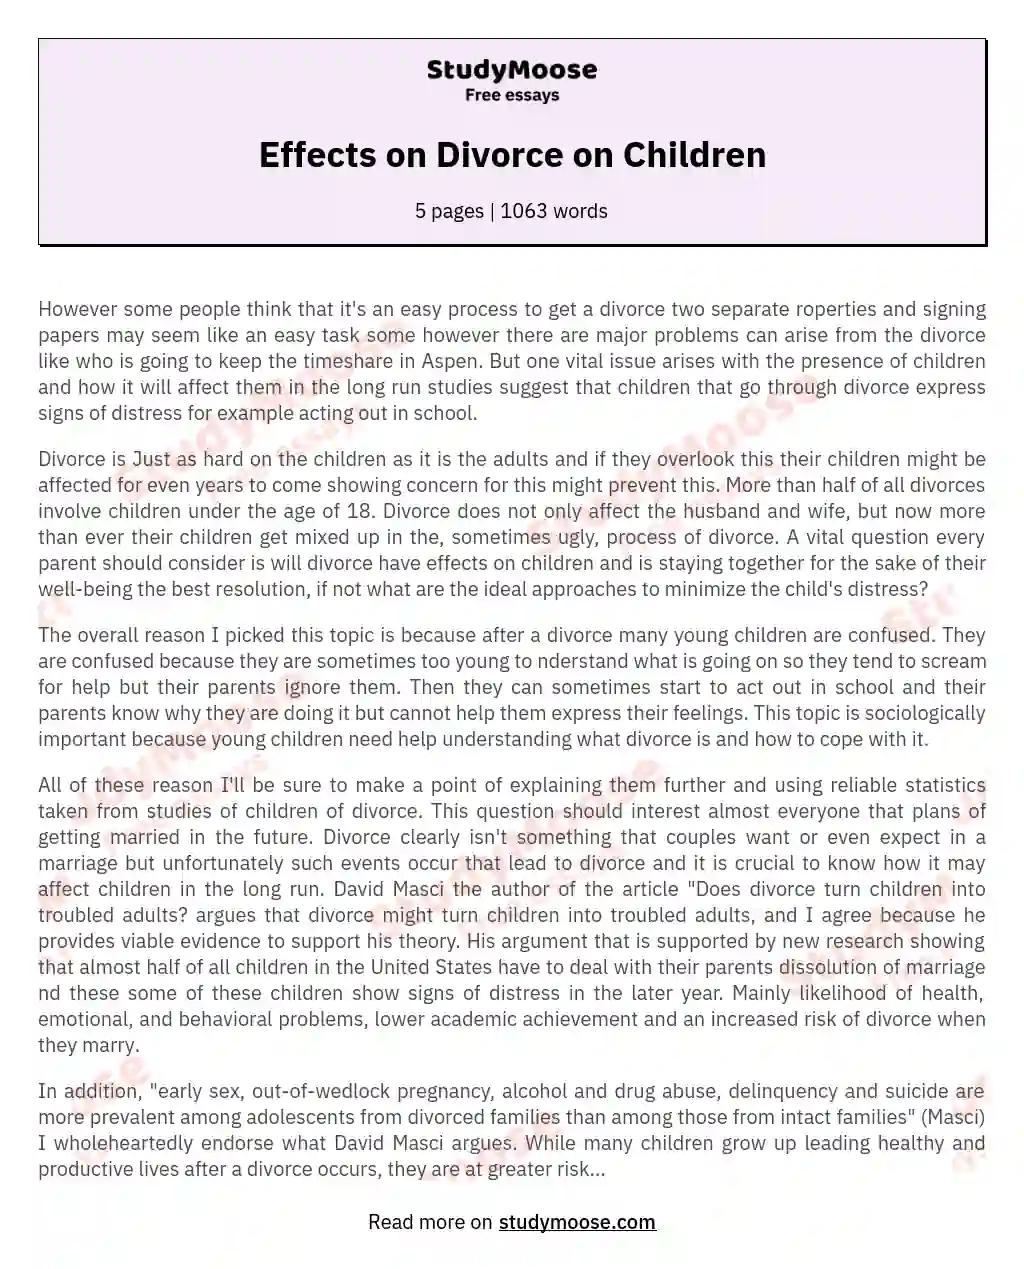 Effects on Divorce on Children essay